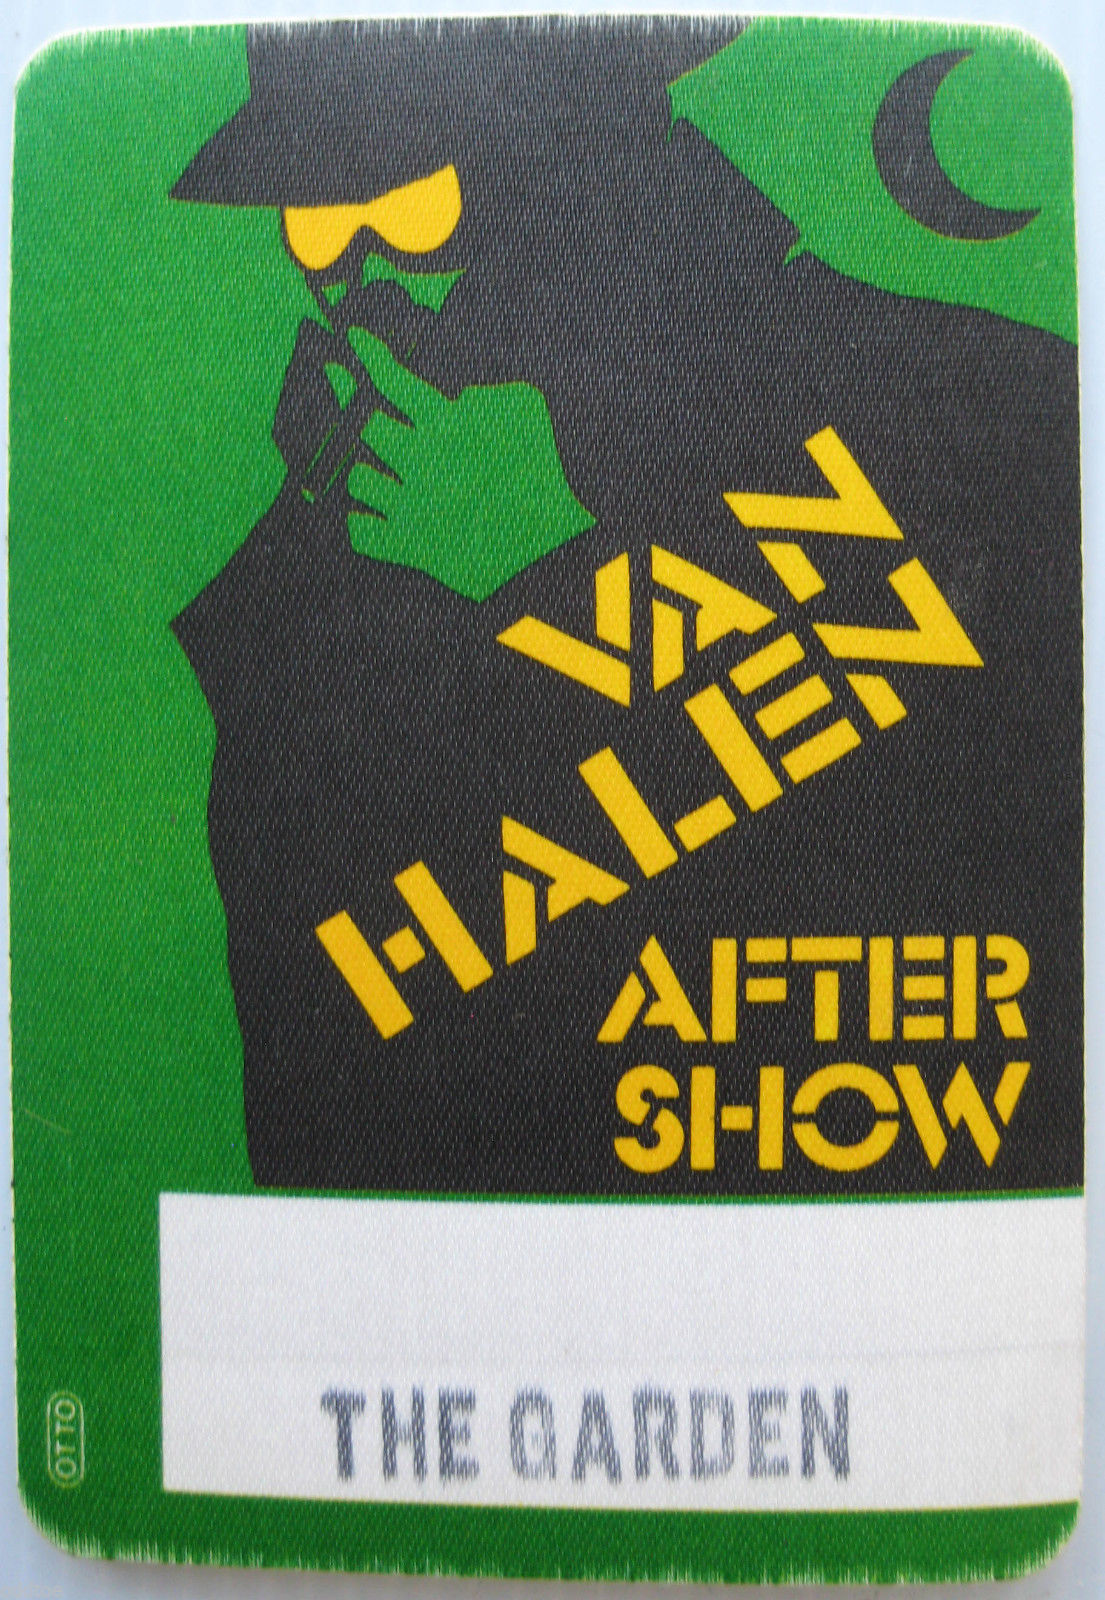 3/30/1980 Van Halen backstage pass